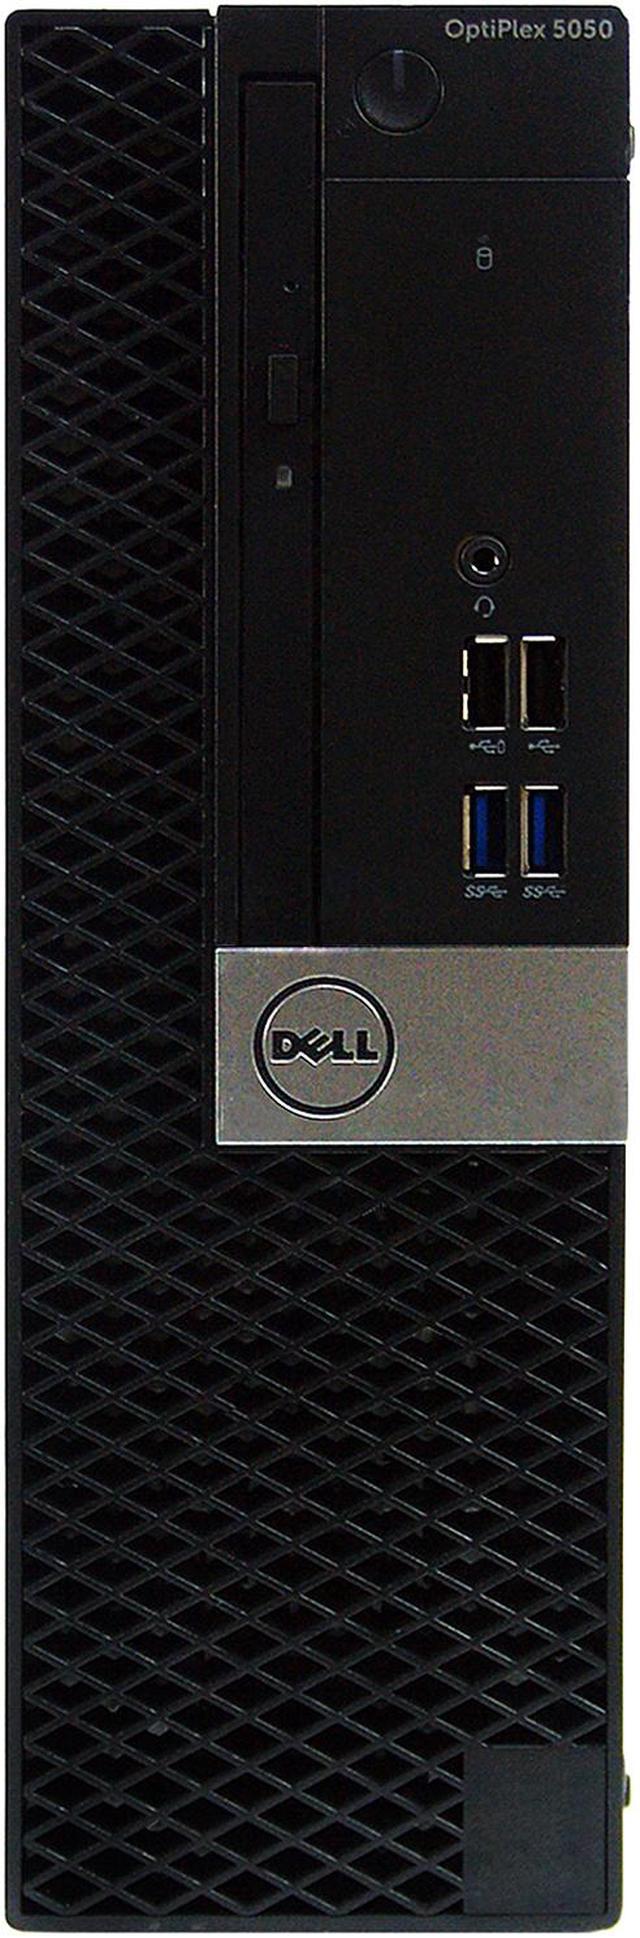 Refurbished: DELL Desktop Computer OptiPlex 5050-SFF Intel Core i5 